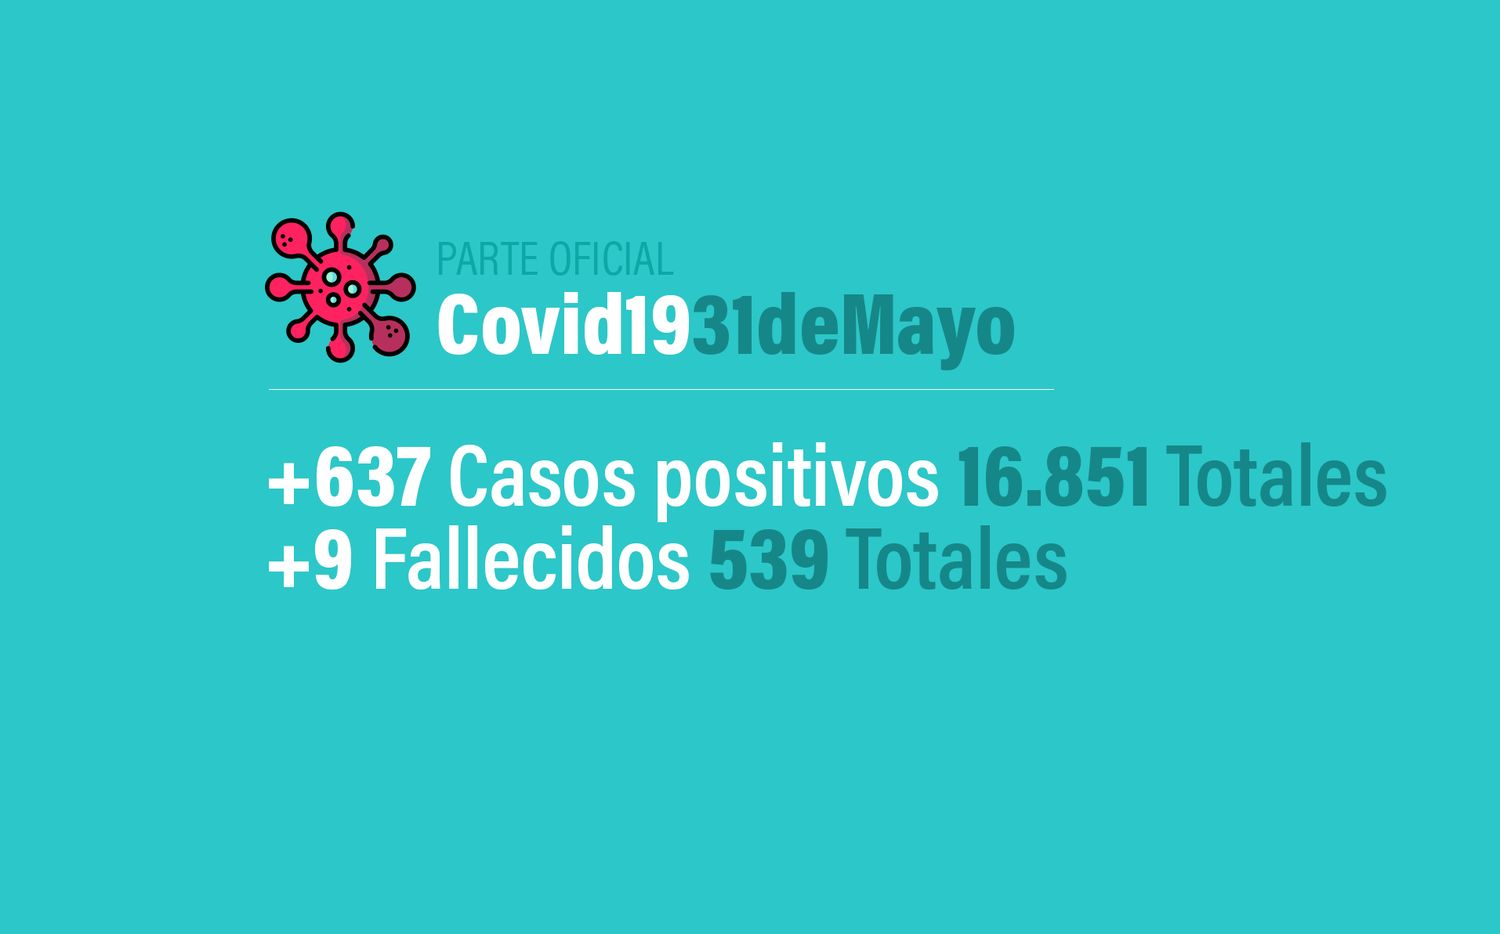 Coronavirus en Argentina: 637 nuevos casos, 16851 confirmados y 539 muertes, al 31 de mayo